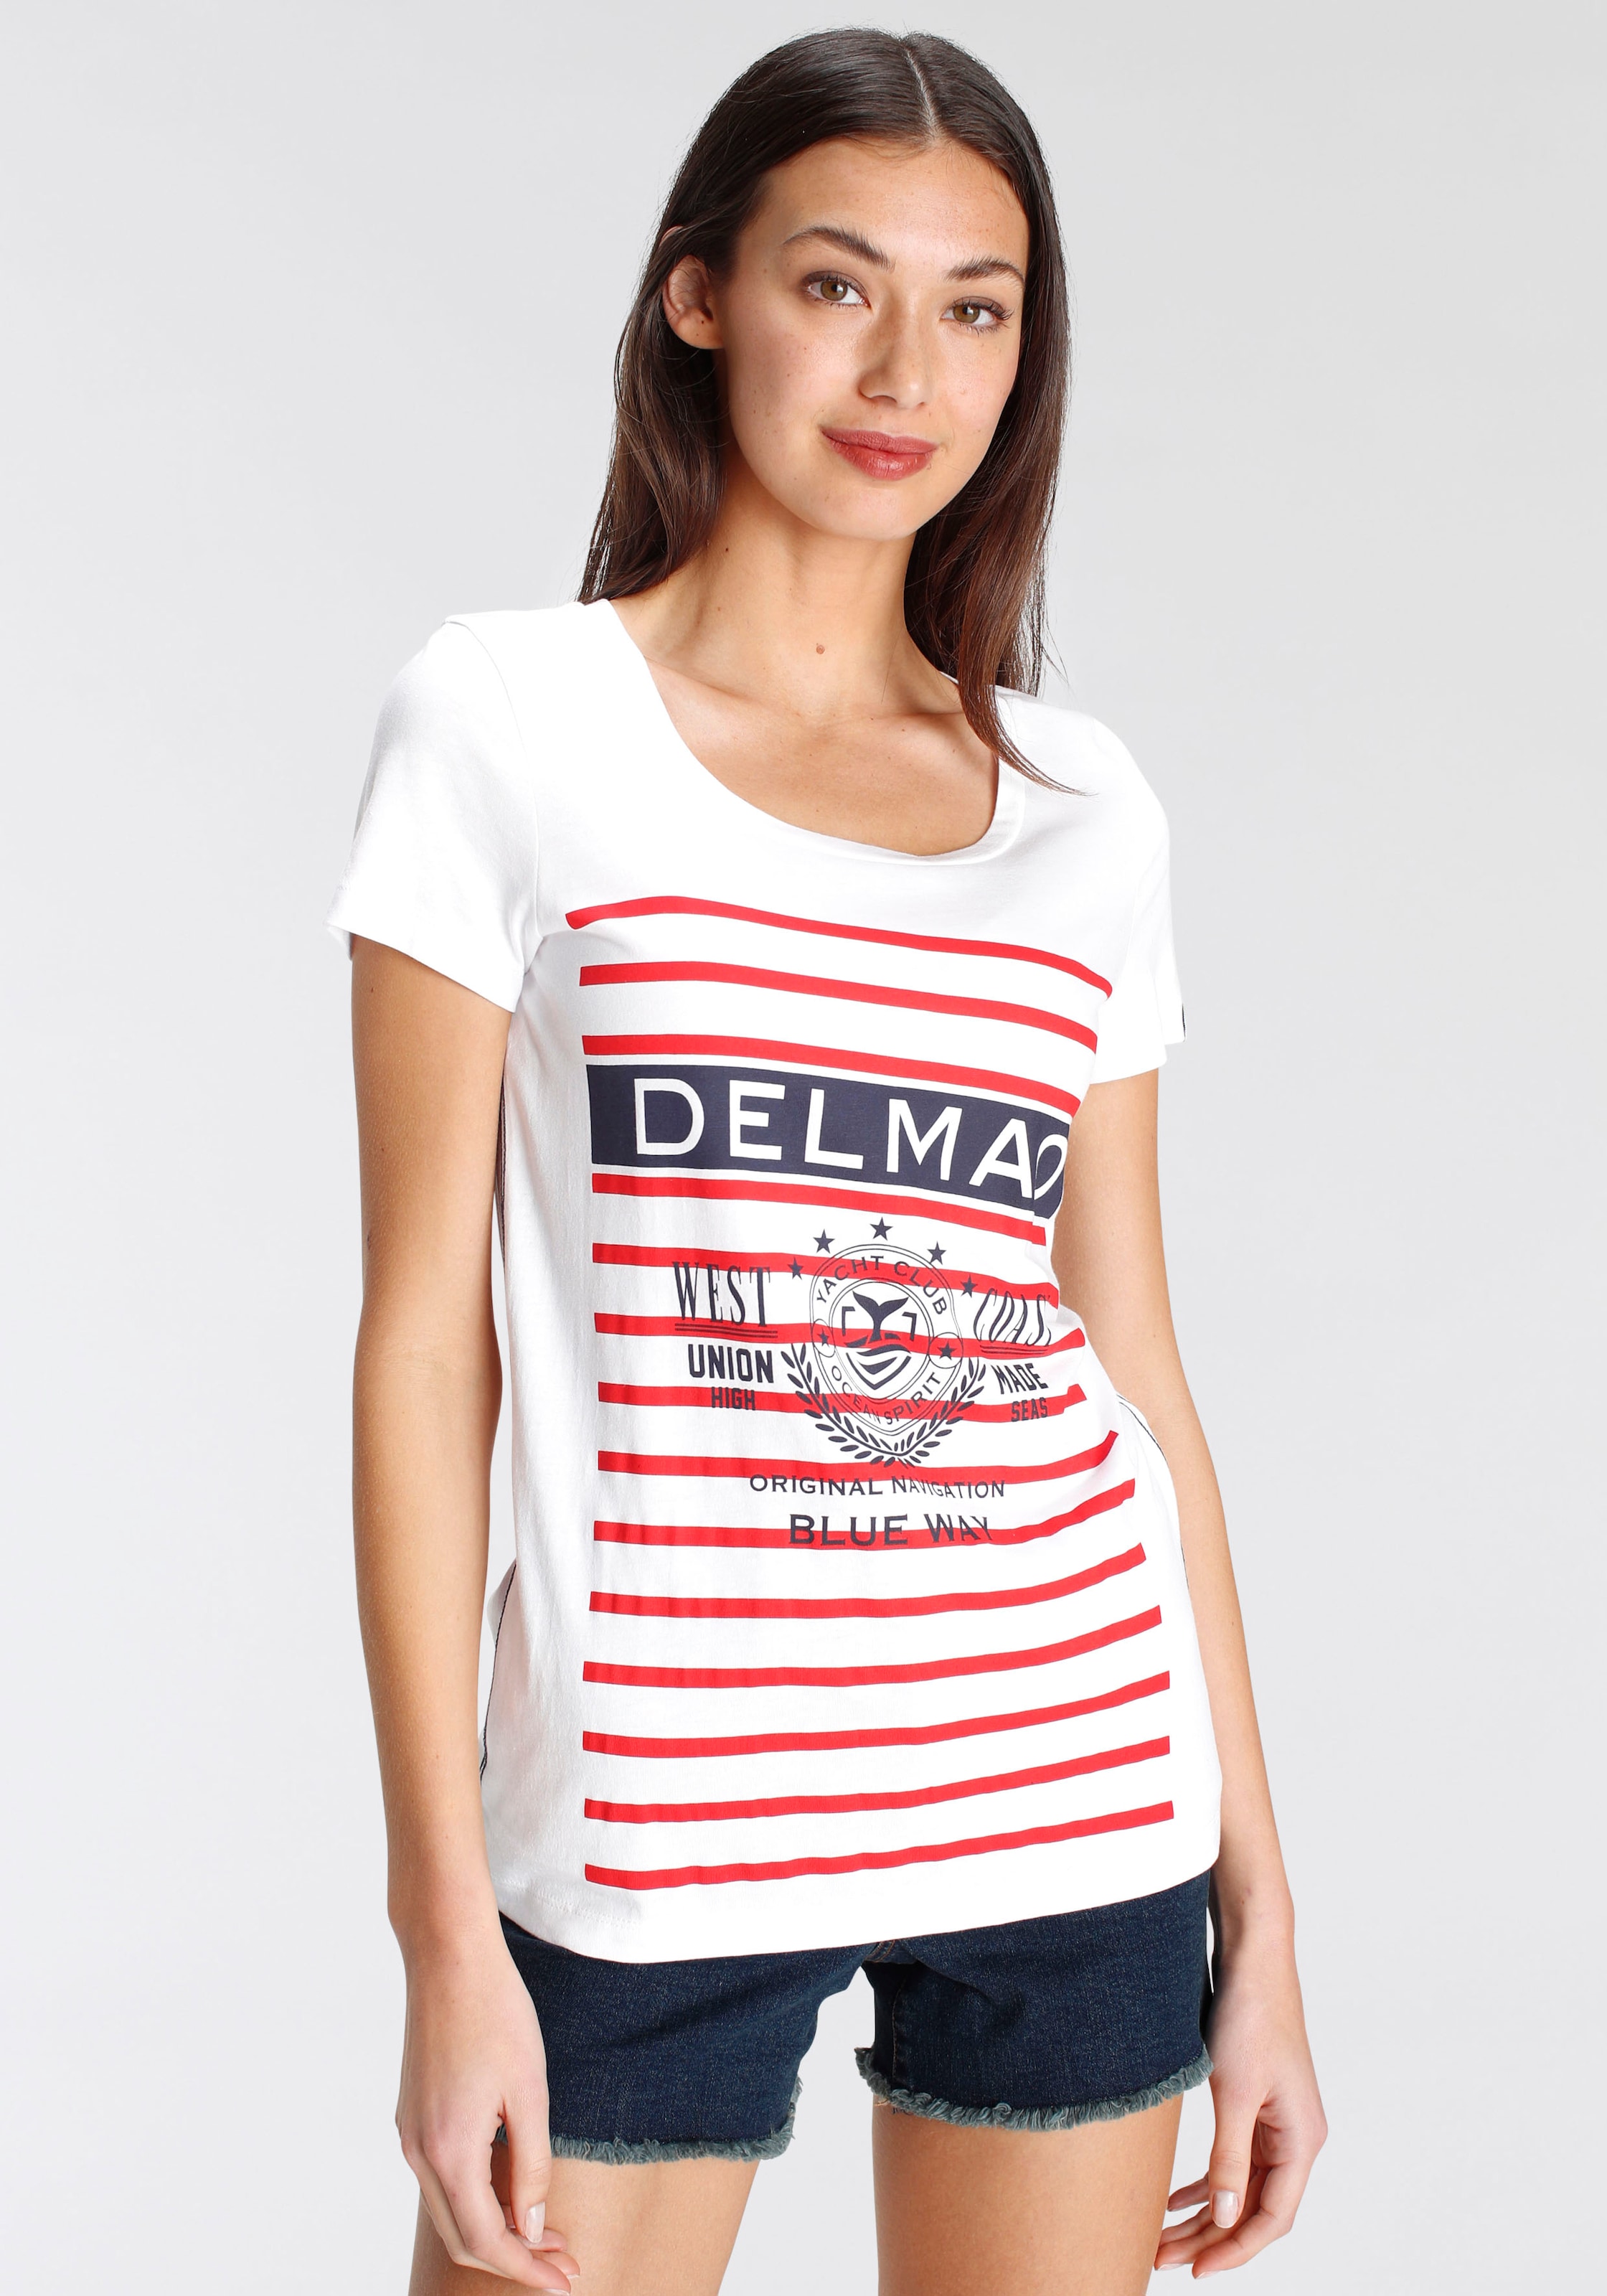 DELMAO Print-Shirt, mit sportivem grossen Marken-Logodruck - NEUE MARKE!  online shoppen bei Jelmoli-Versand Schweiz